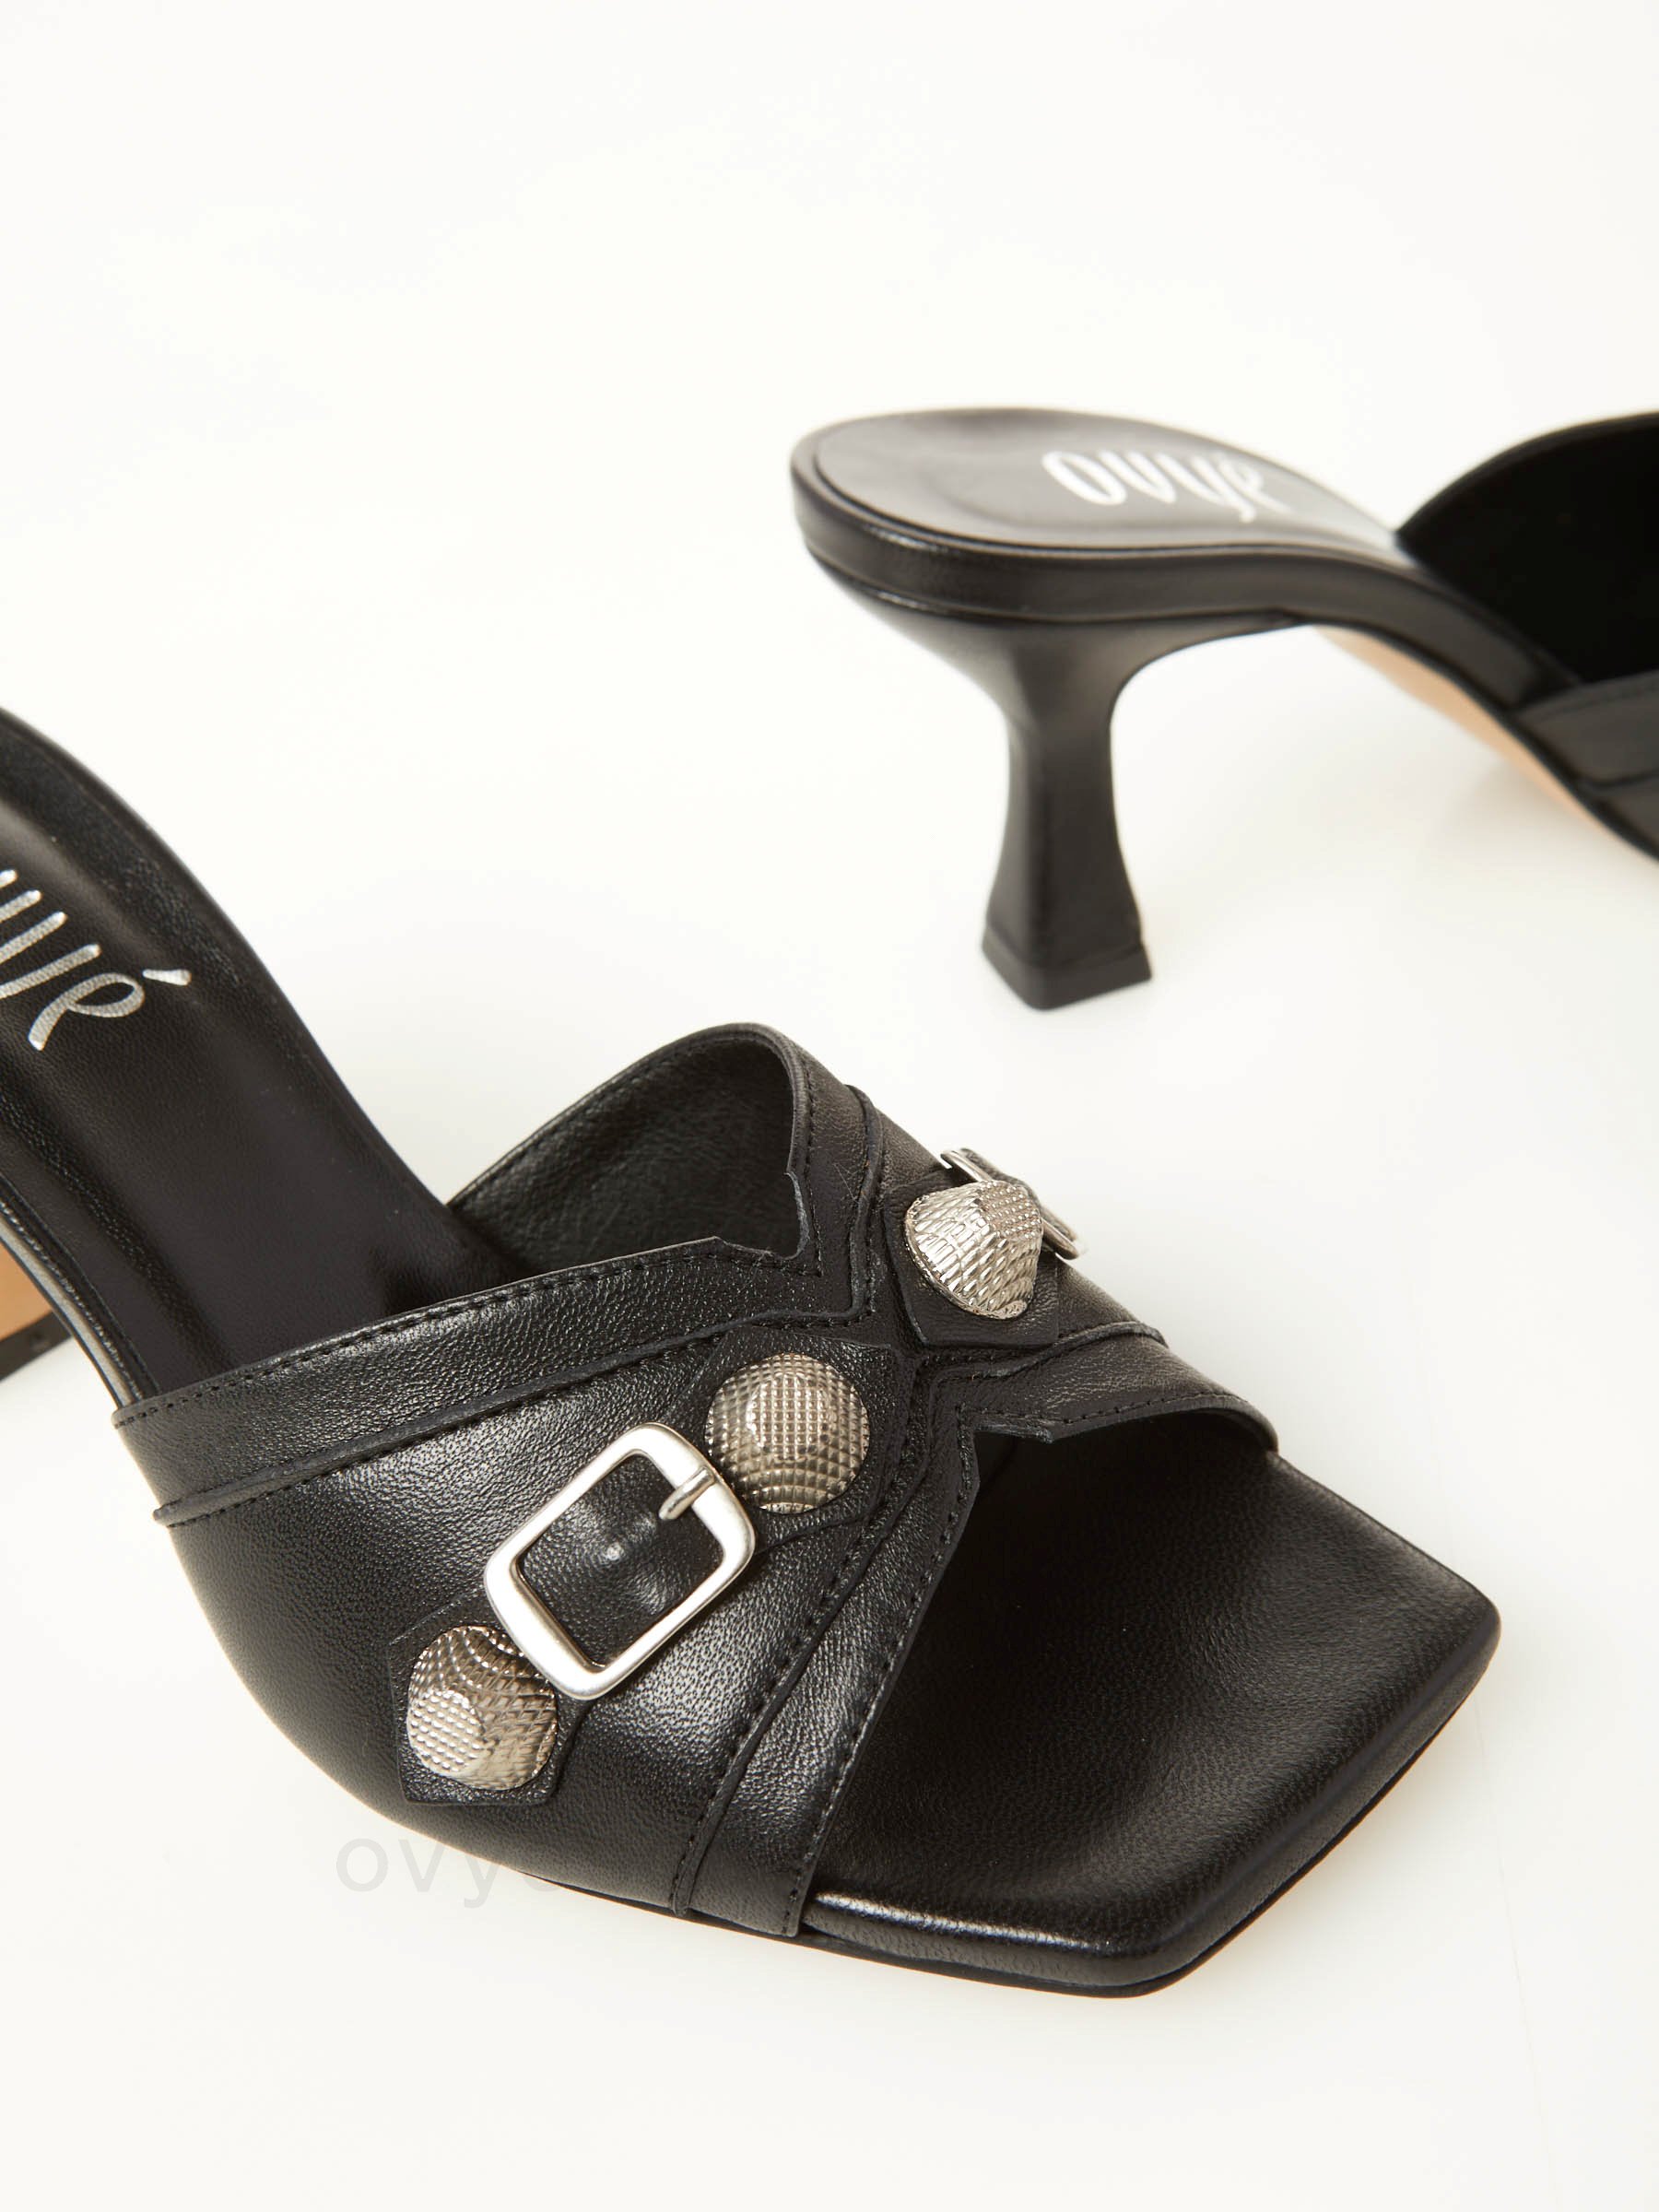 Sconti Fino A - 88% Leather Heel Sandal F08161027-0564 In Vendita